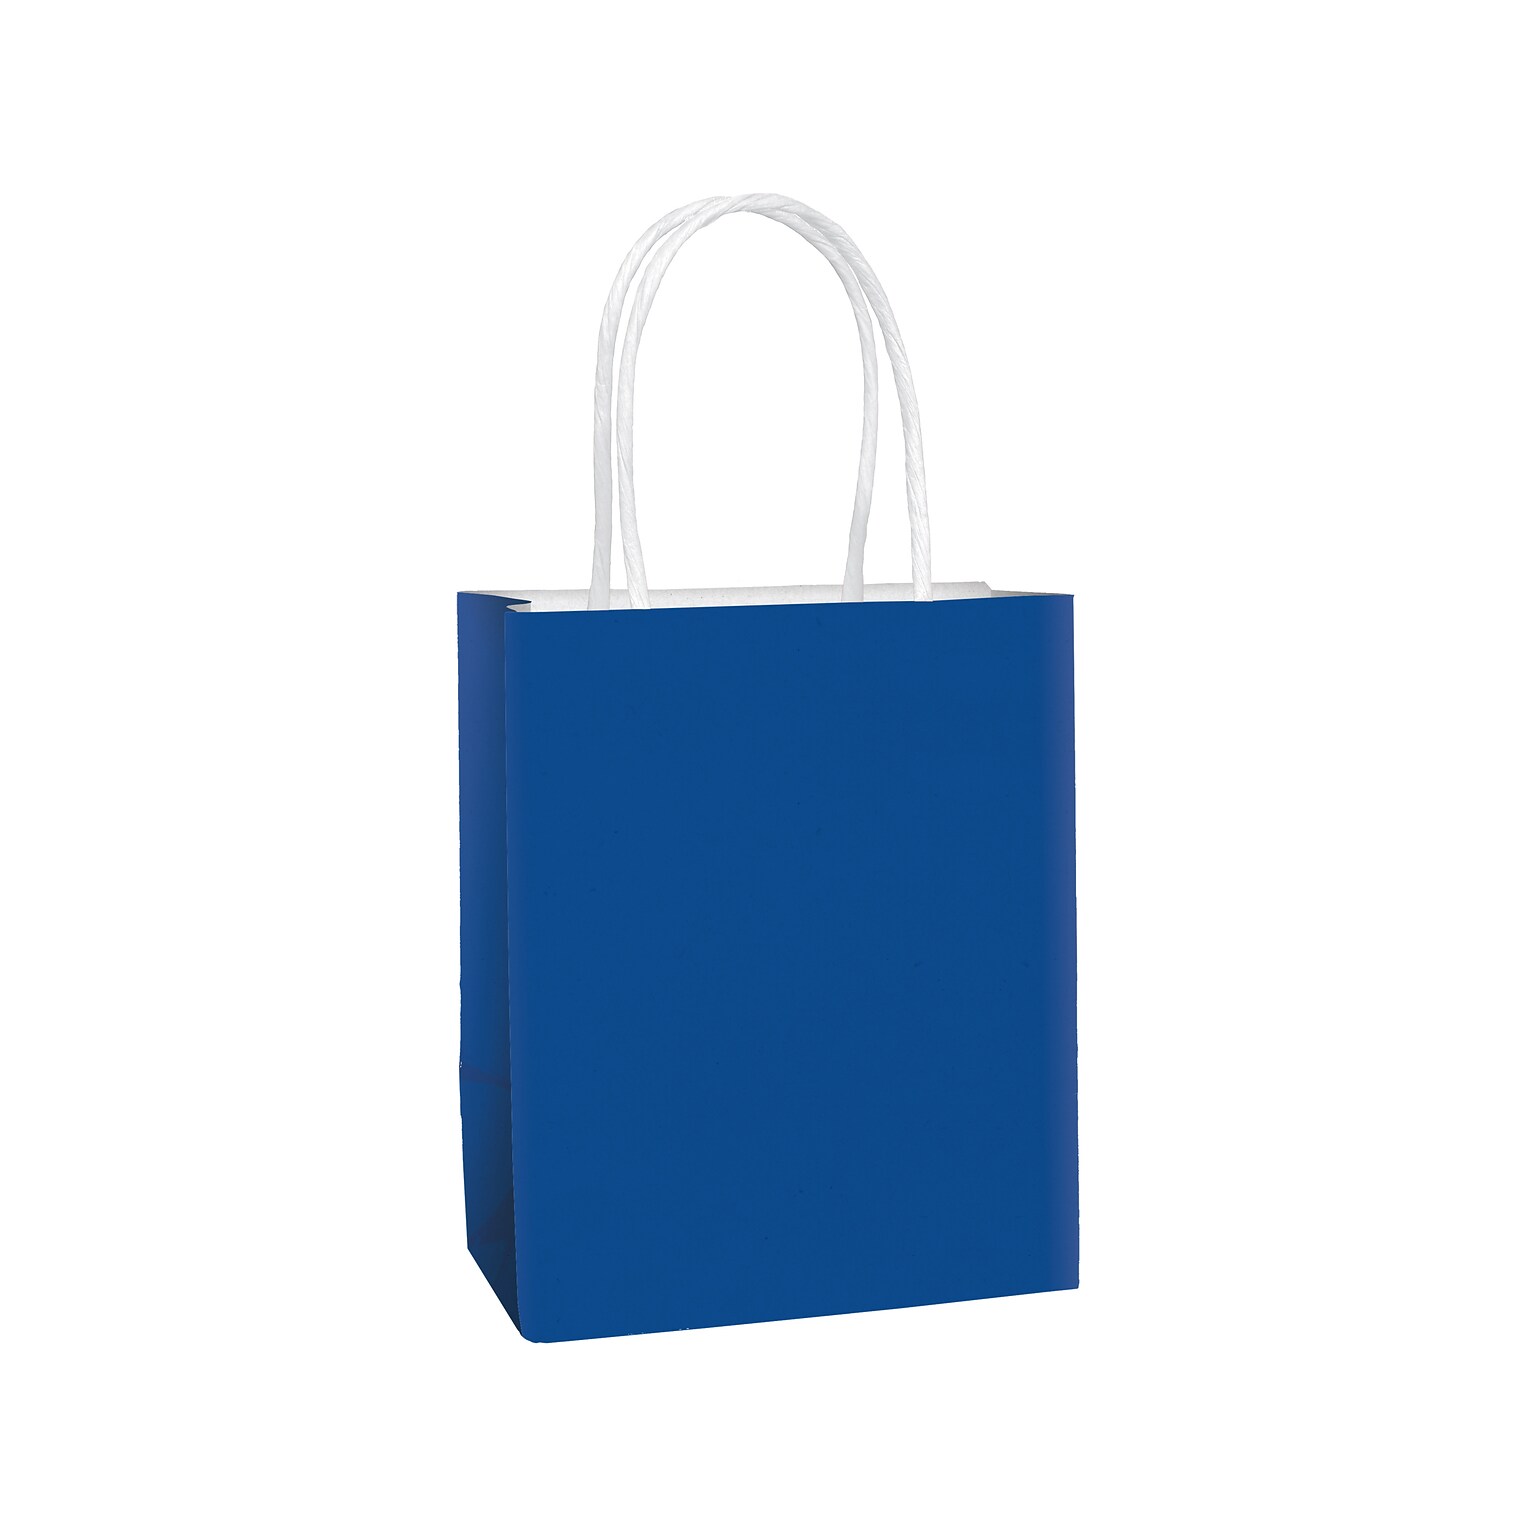 Amscan Kraft Paper Bag, 8.25 x 5.25, Bright Royal Blue, 24 Bags/Pack (162800.105)